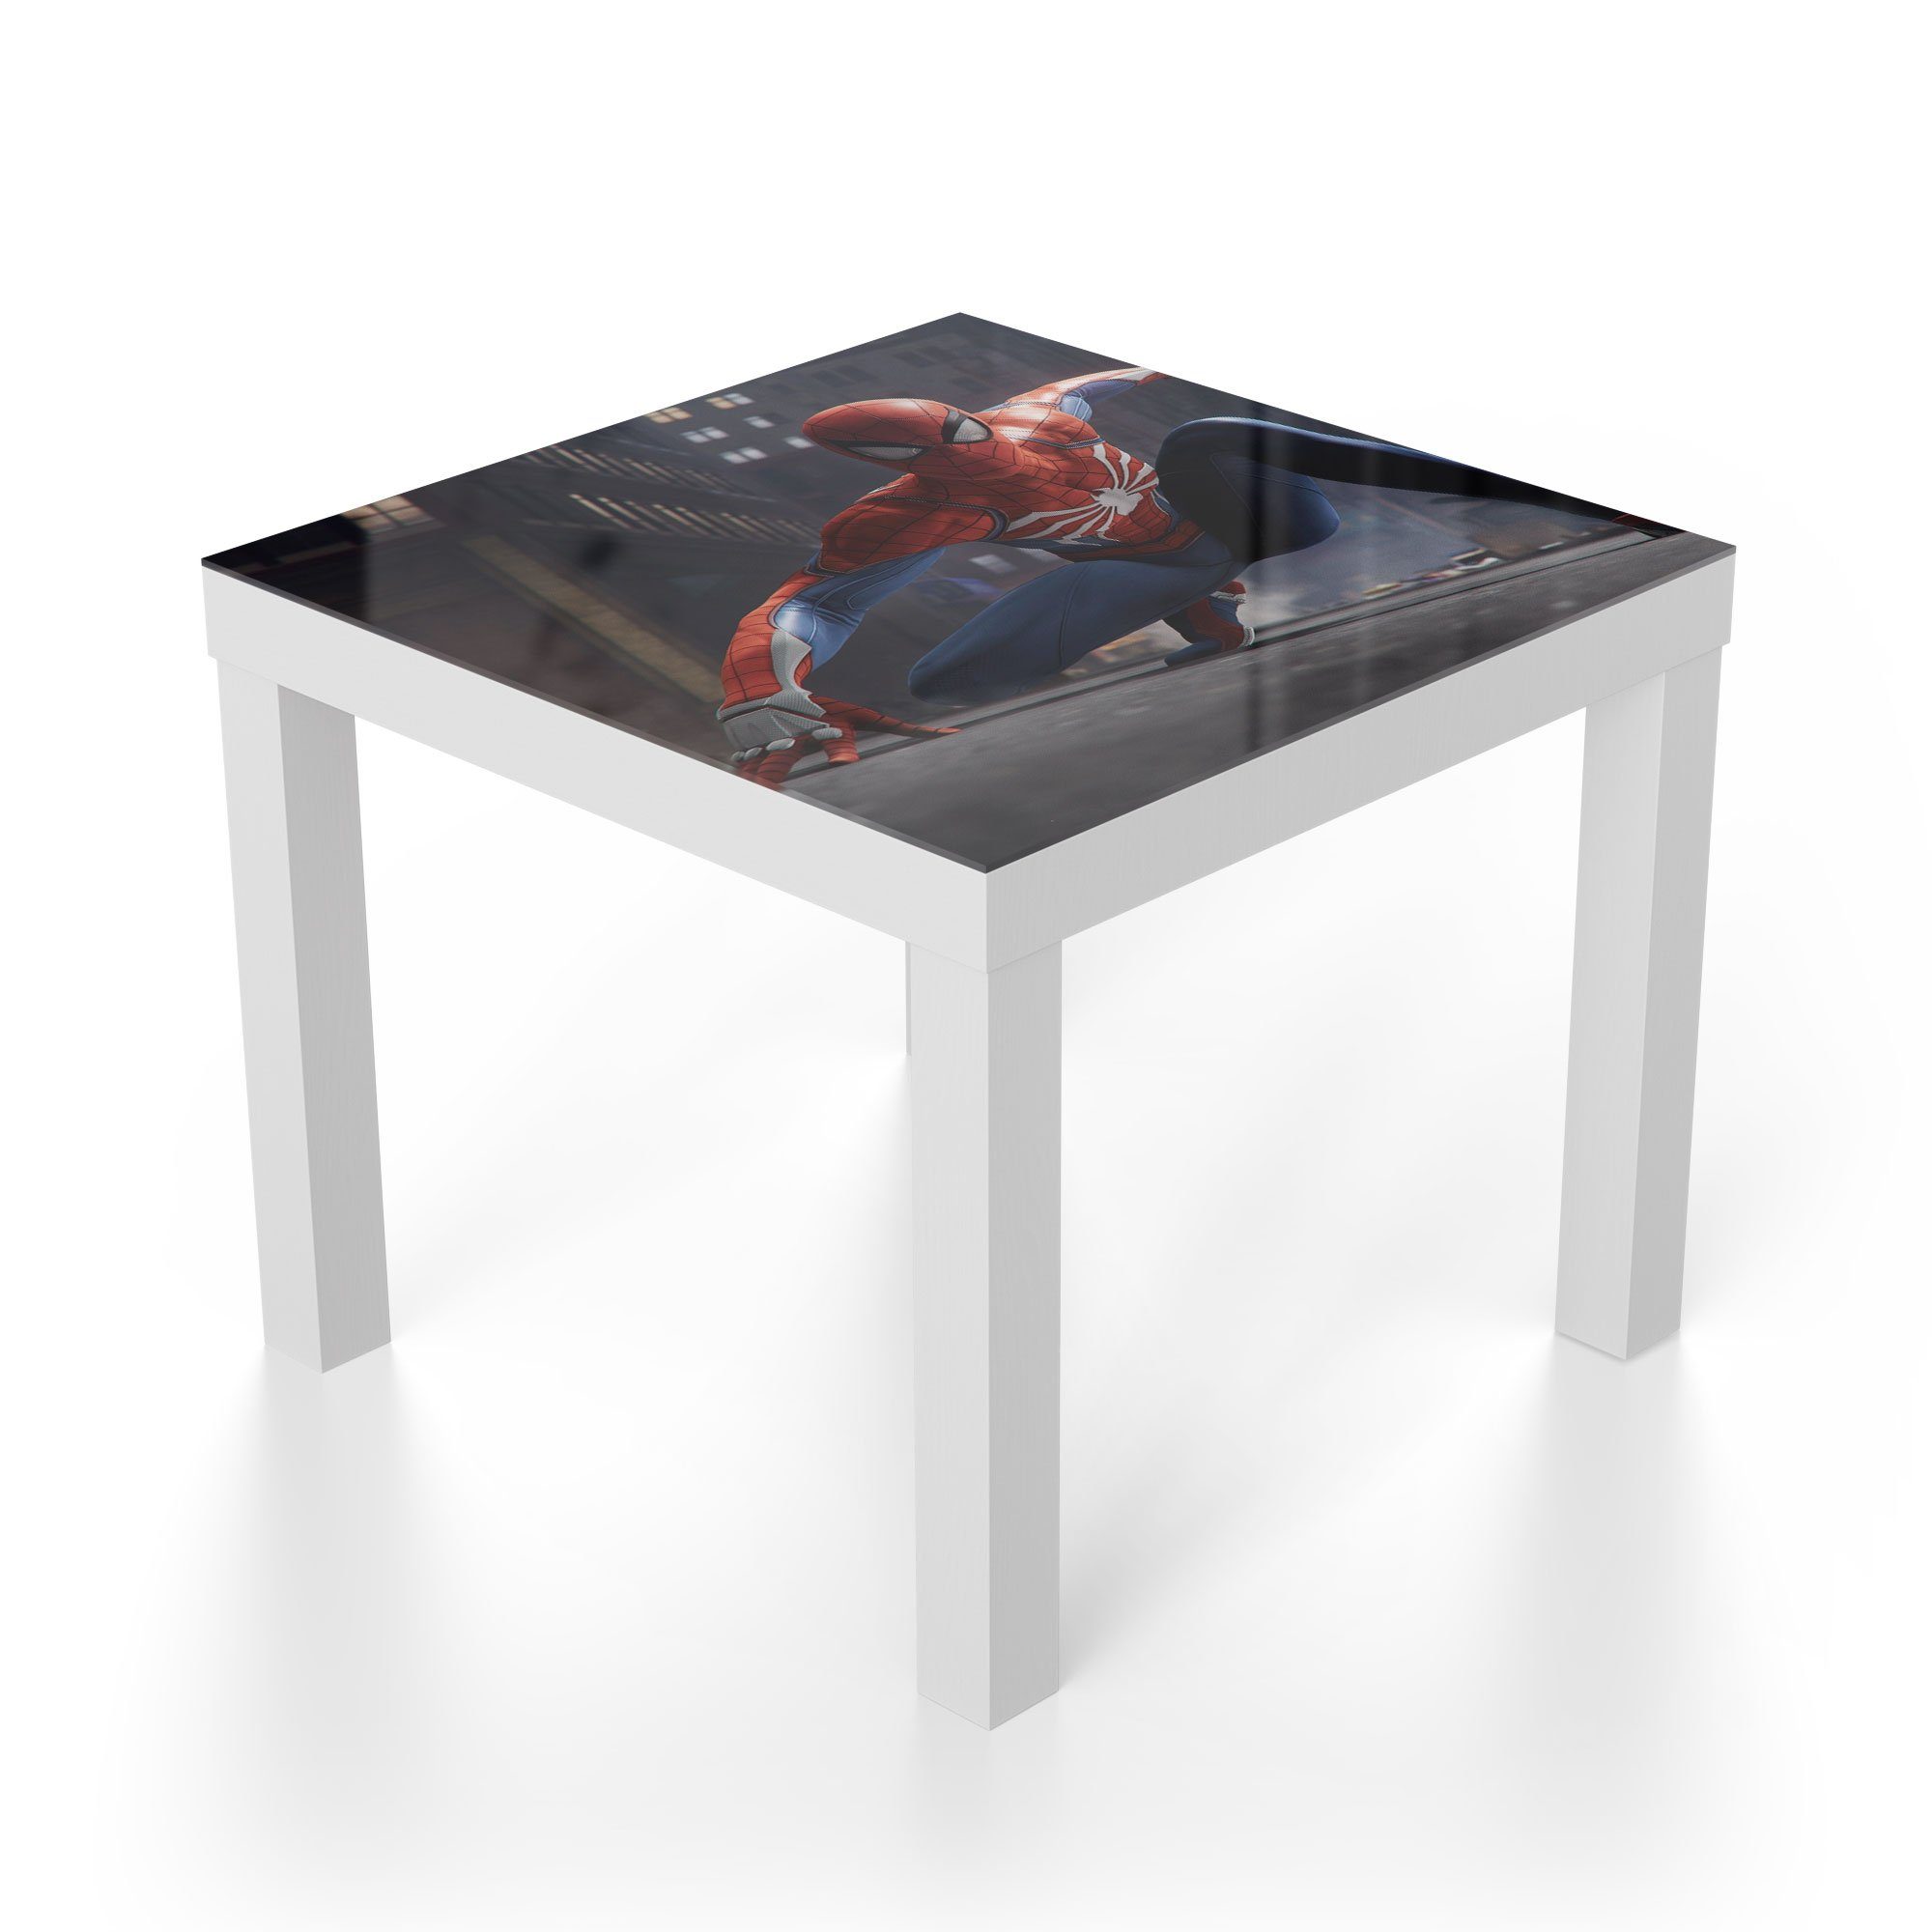 DEQORI Beistelltisch Couchtisch Glastisch modern Weiß Glas Superheld', 'Spider-Man